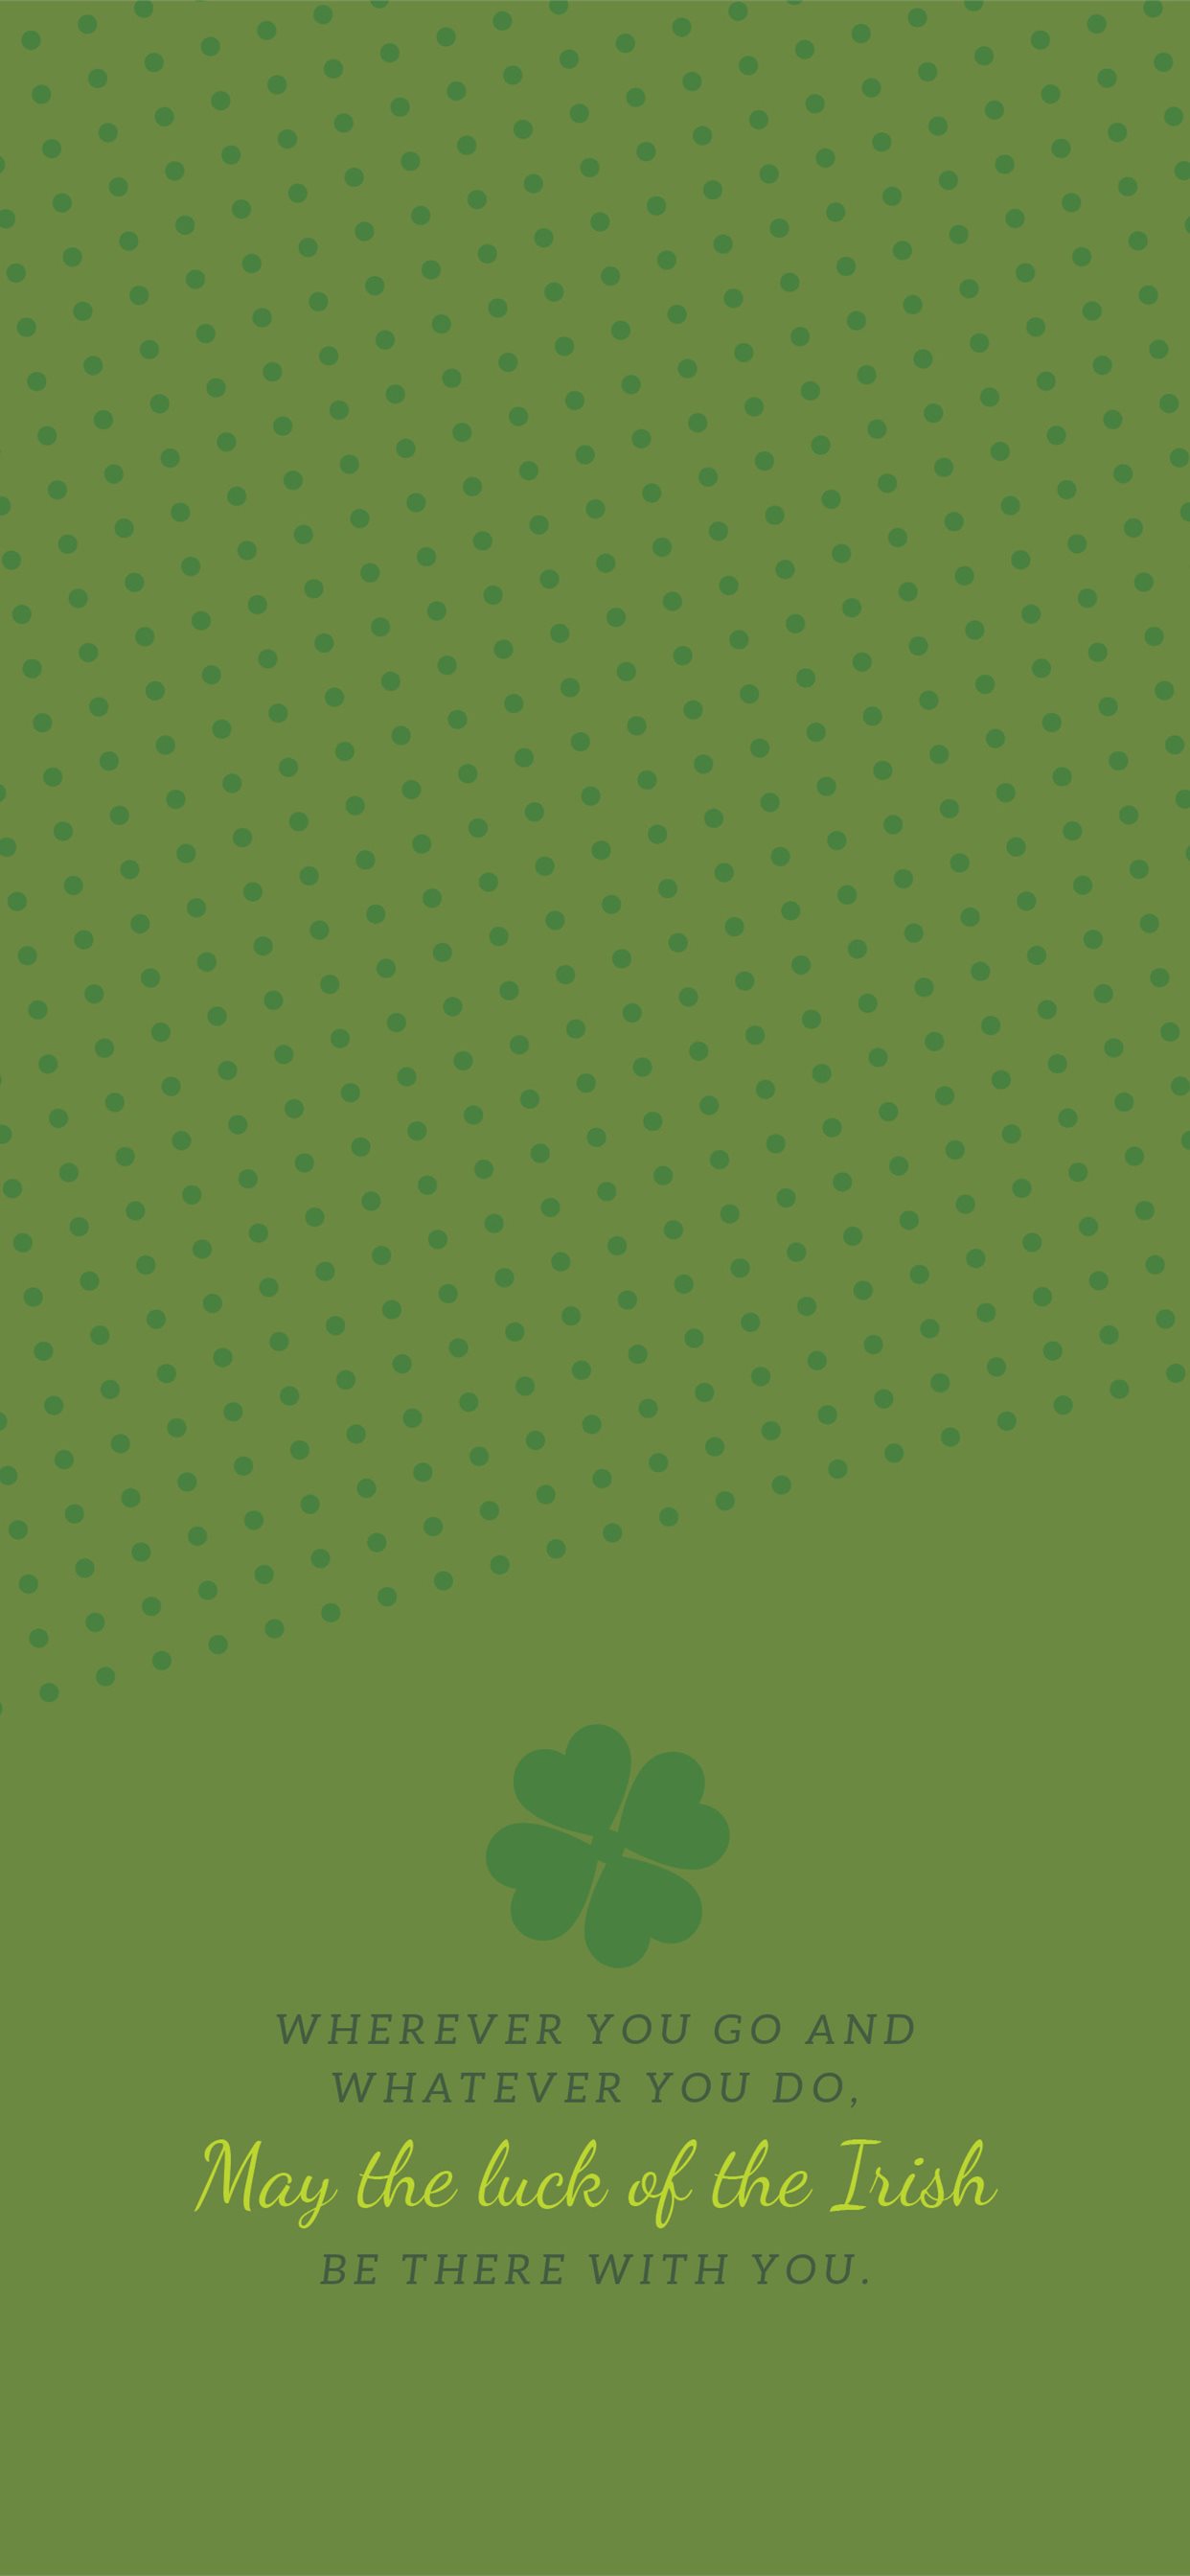 May Everyone Have a Good luck at Saint Patricks Day 4K wallpaper download